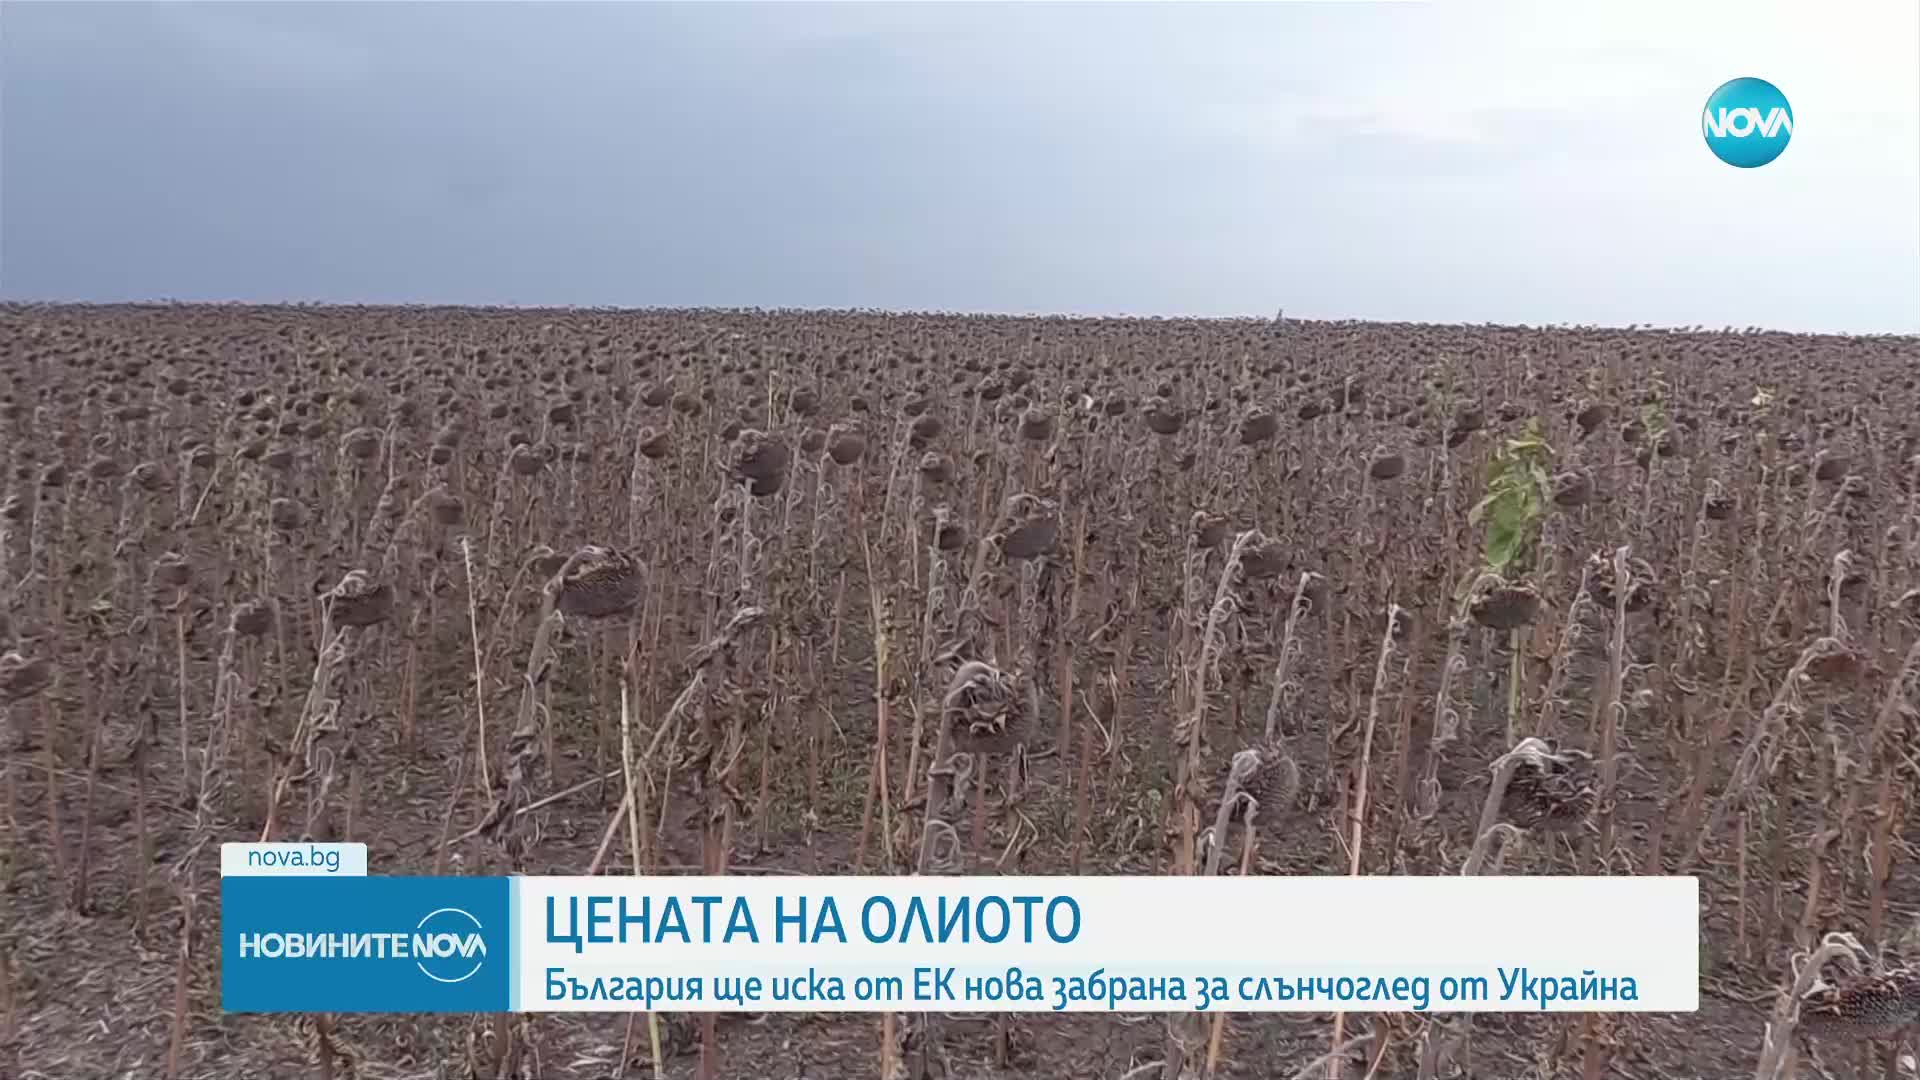 Цената на олиото: България иска удължаване на забраната за внос на слънчоглед от Украйна